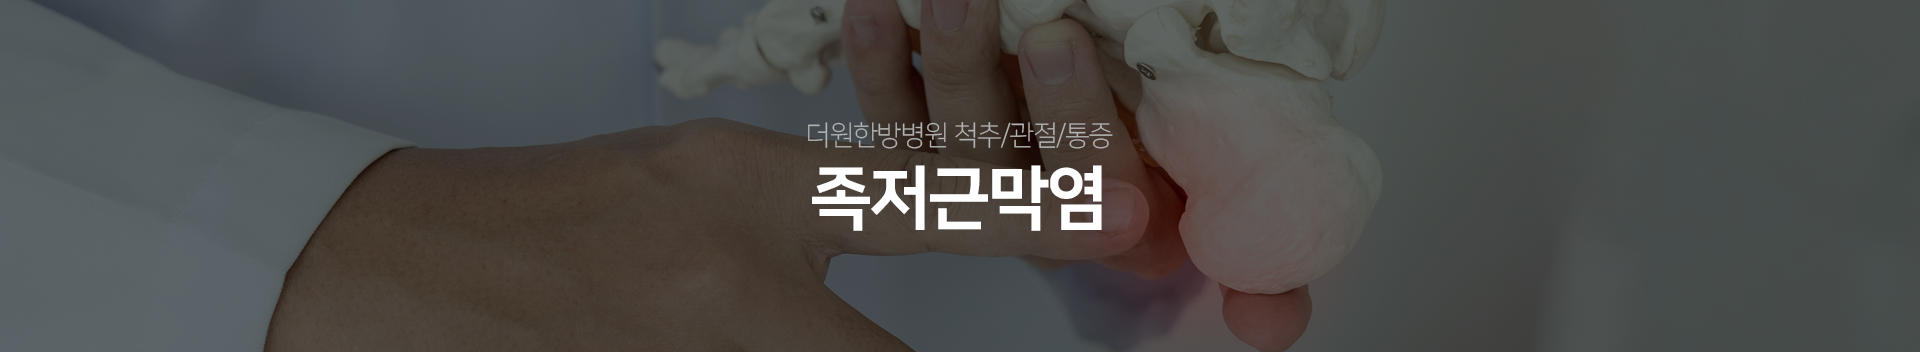 더원한방병원-척추/관절/통증-족저근막염